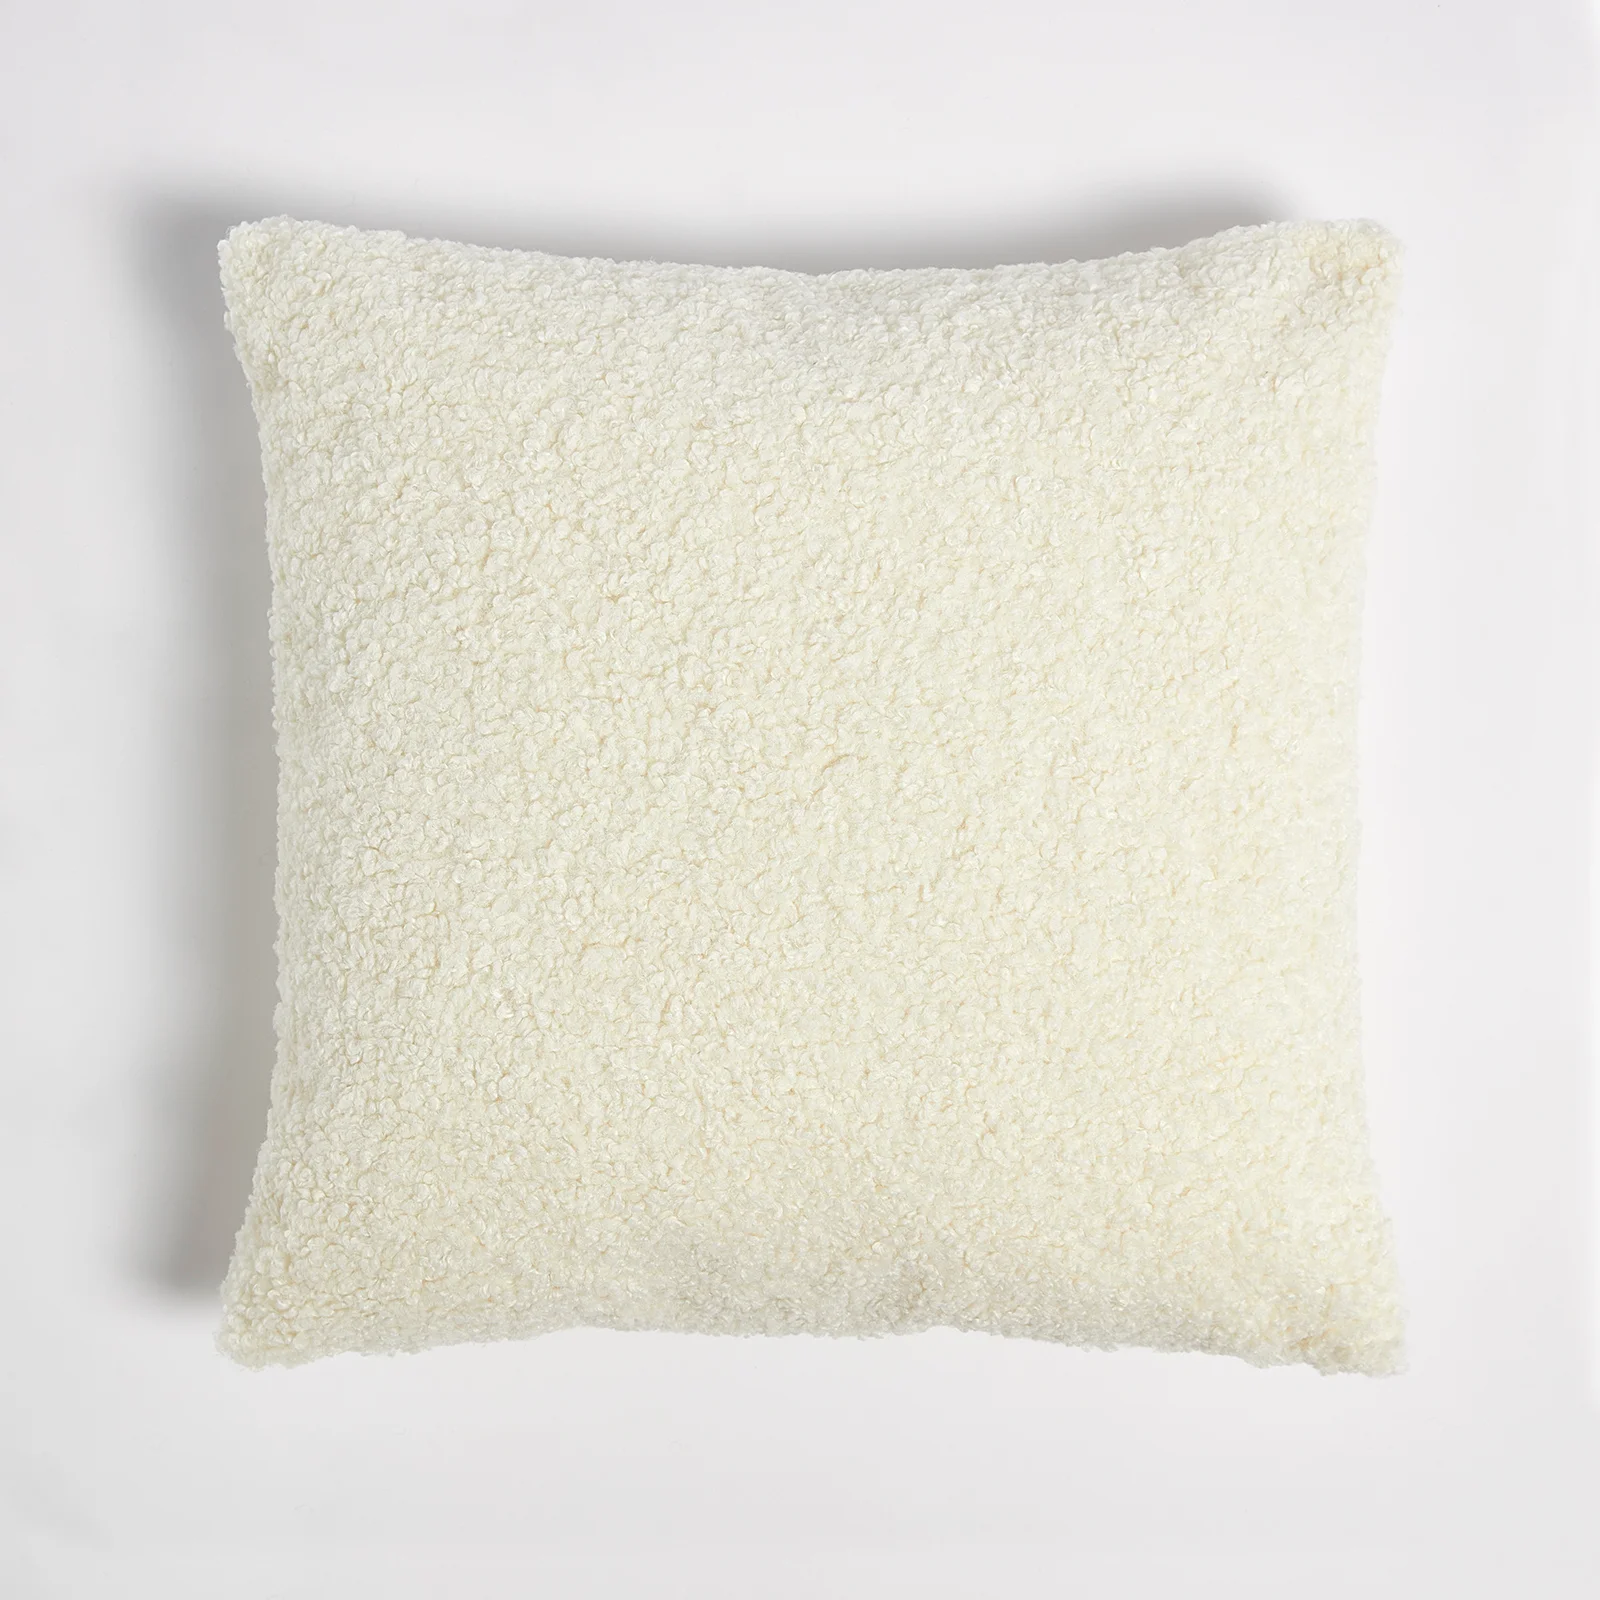 ïn home Faux Sheep Skin Cushion - White - 50x50cm Image 1